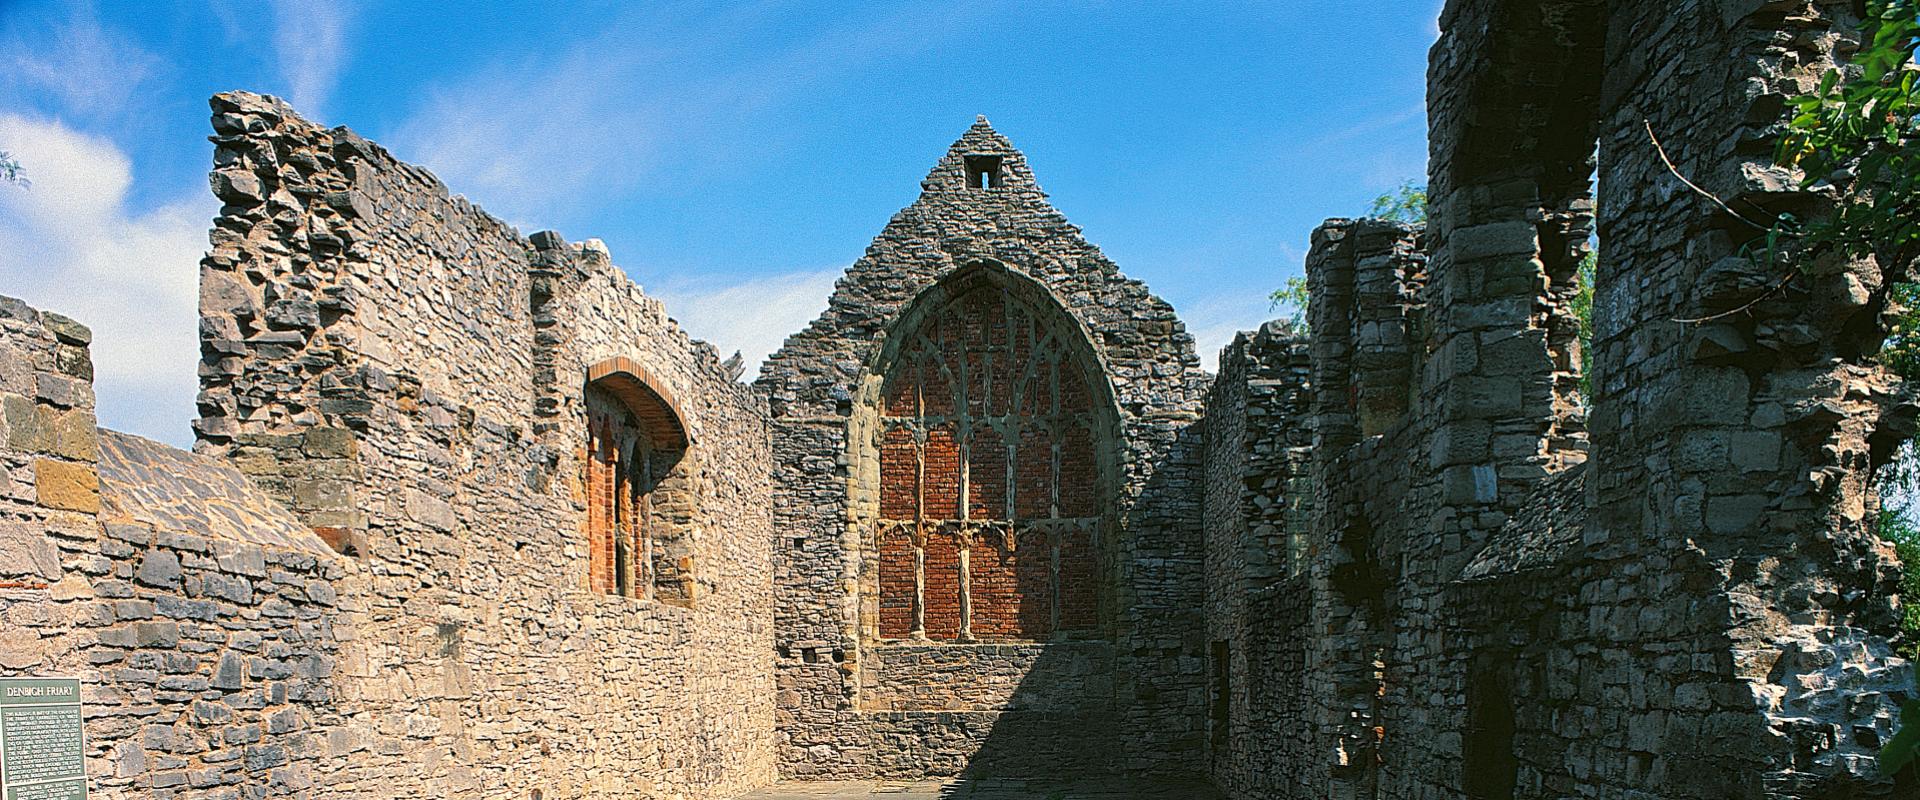 Eglwys y Brodyr, Dinbych/Denbigh Friary Church